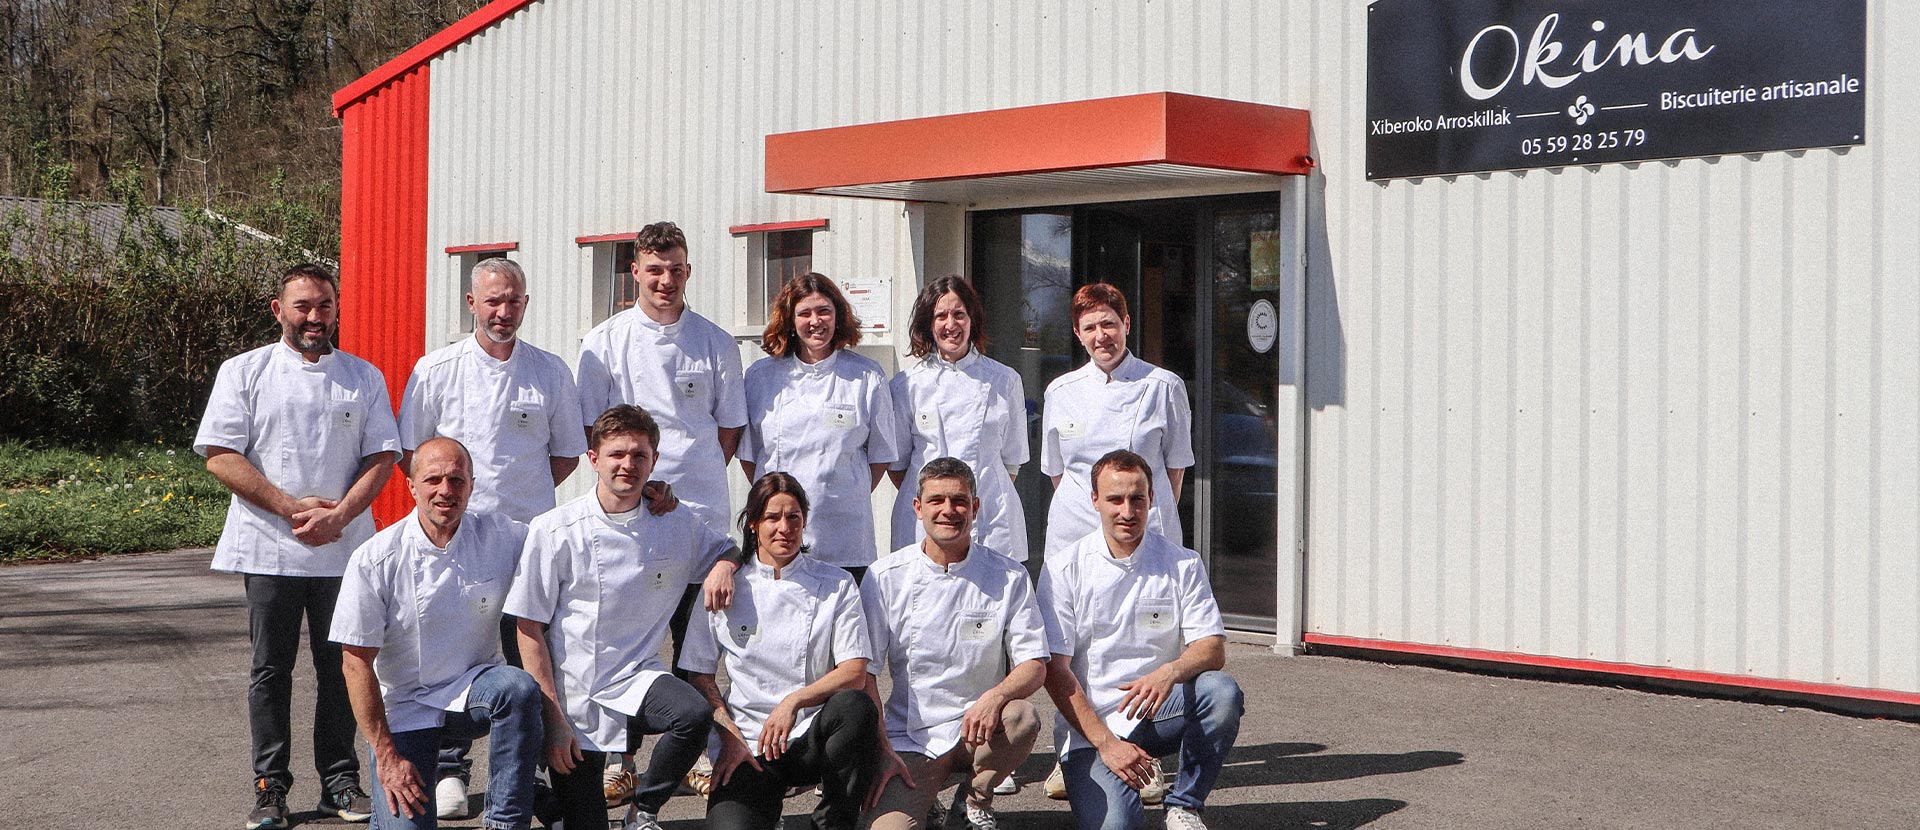 L'équipe d'Okina, la biscuiterie artisanale au pays basque